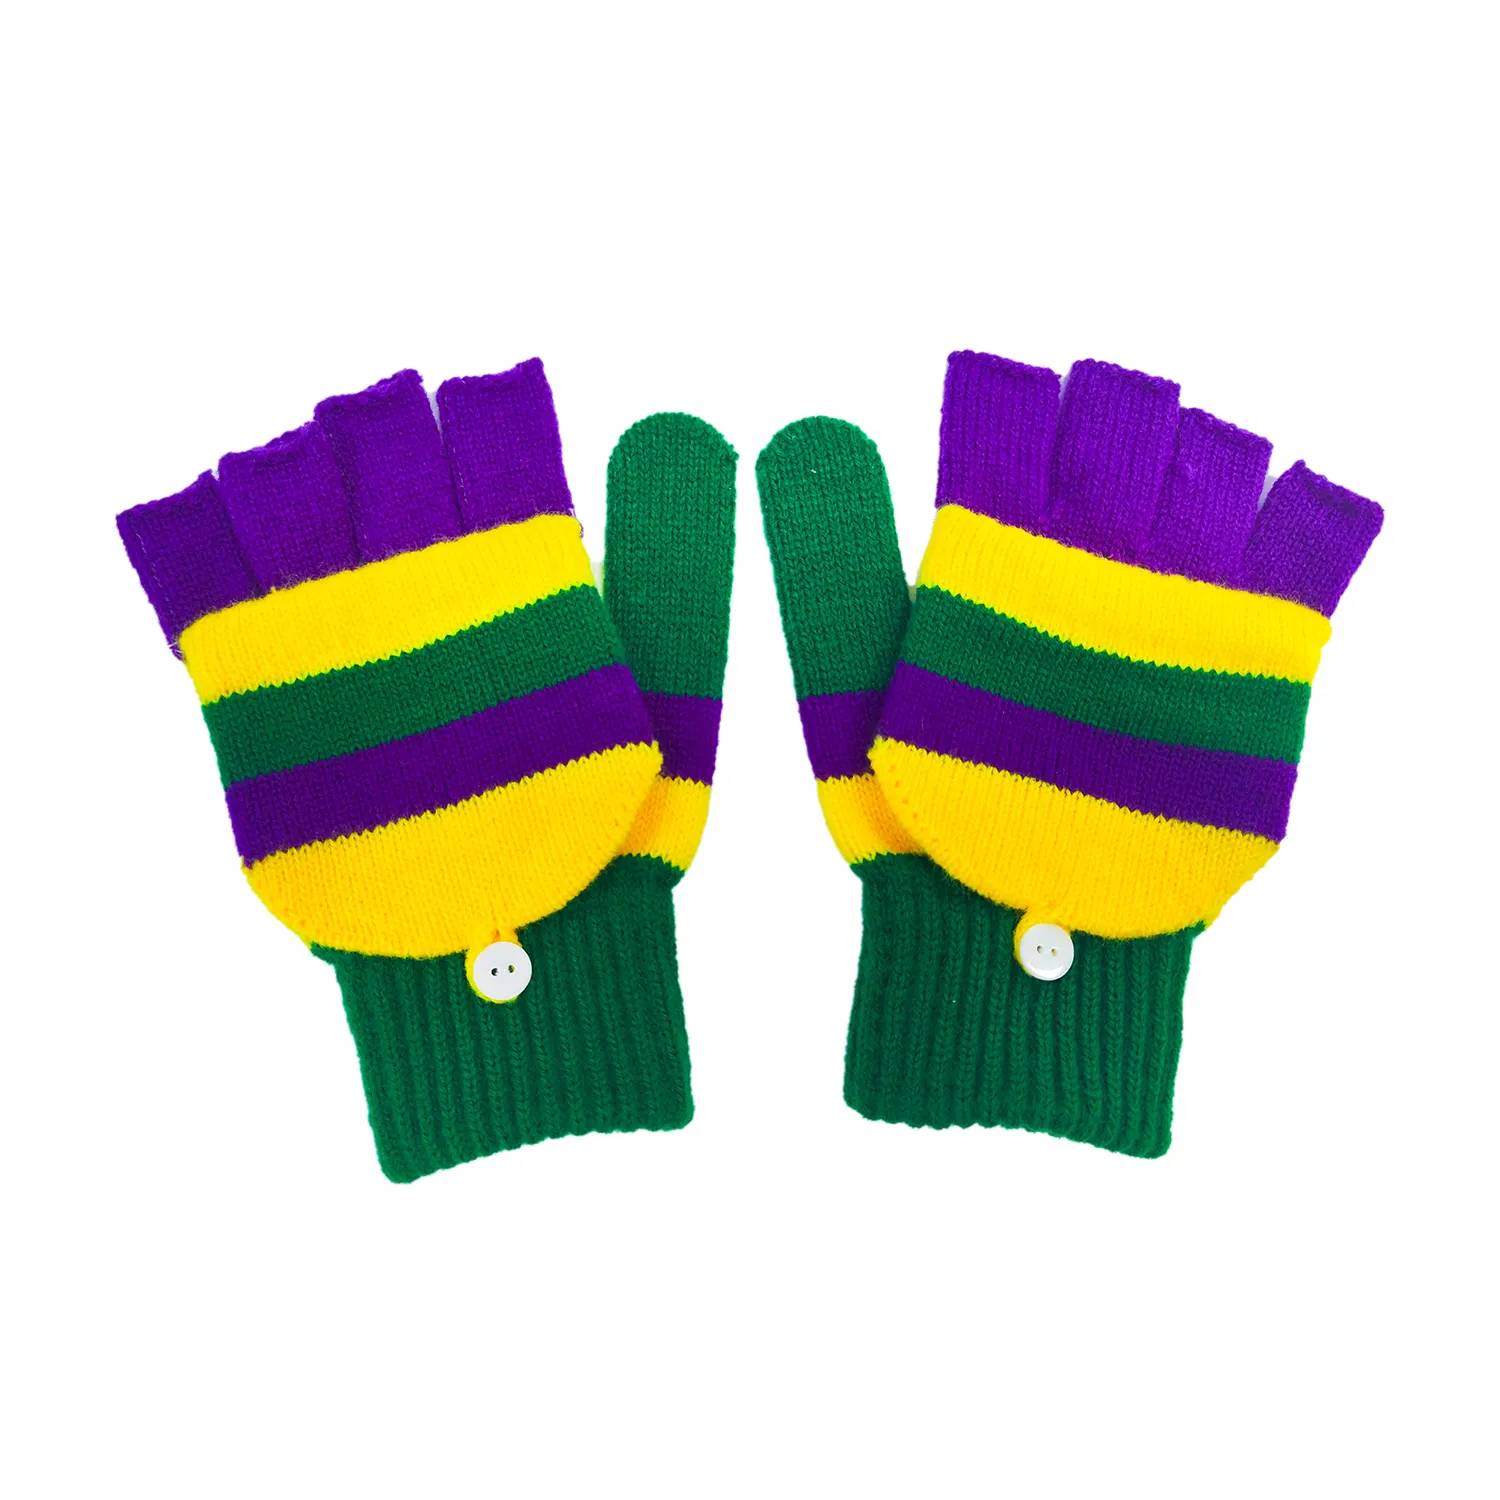 Mitaines colorées Mardi Gras mitaines unisexe rayé tricot gants de fête